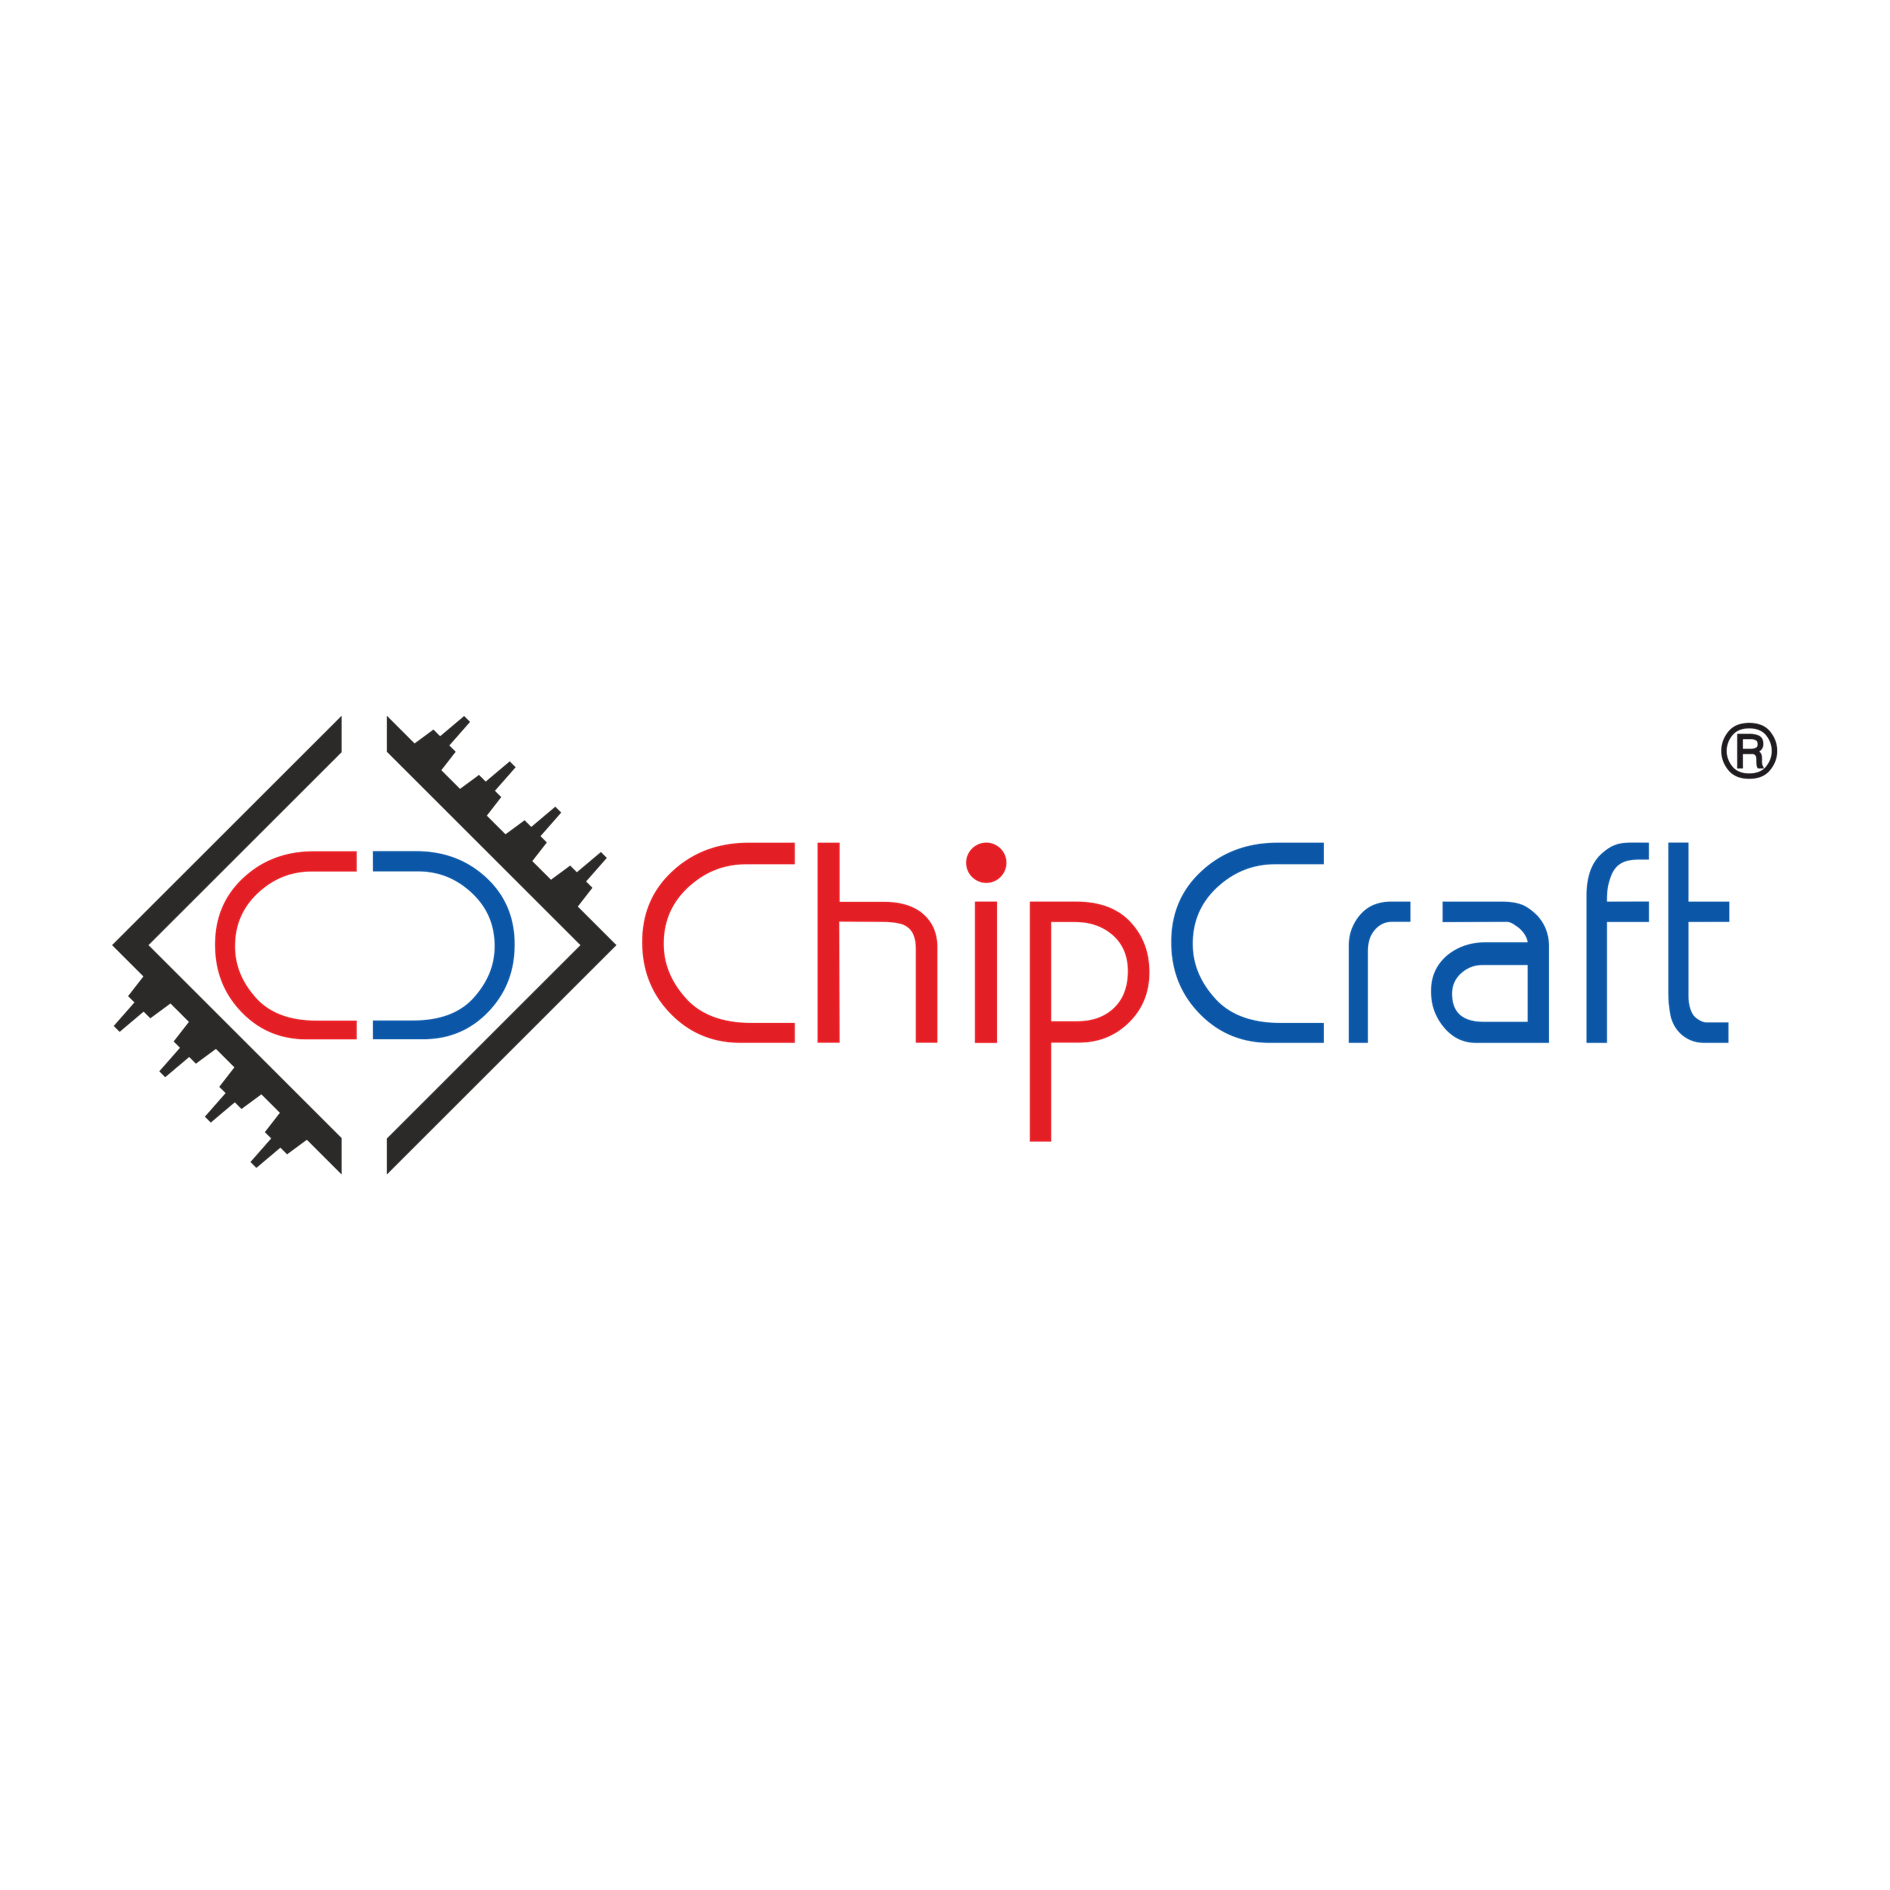 ChipCraft